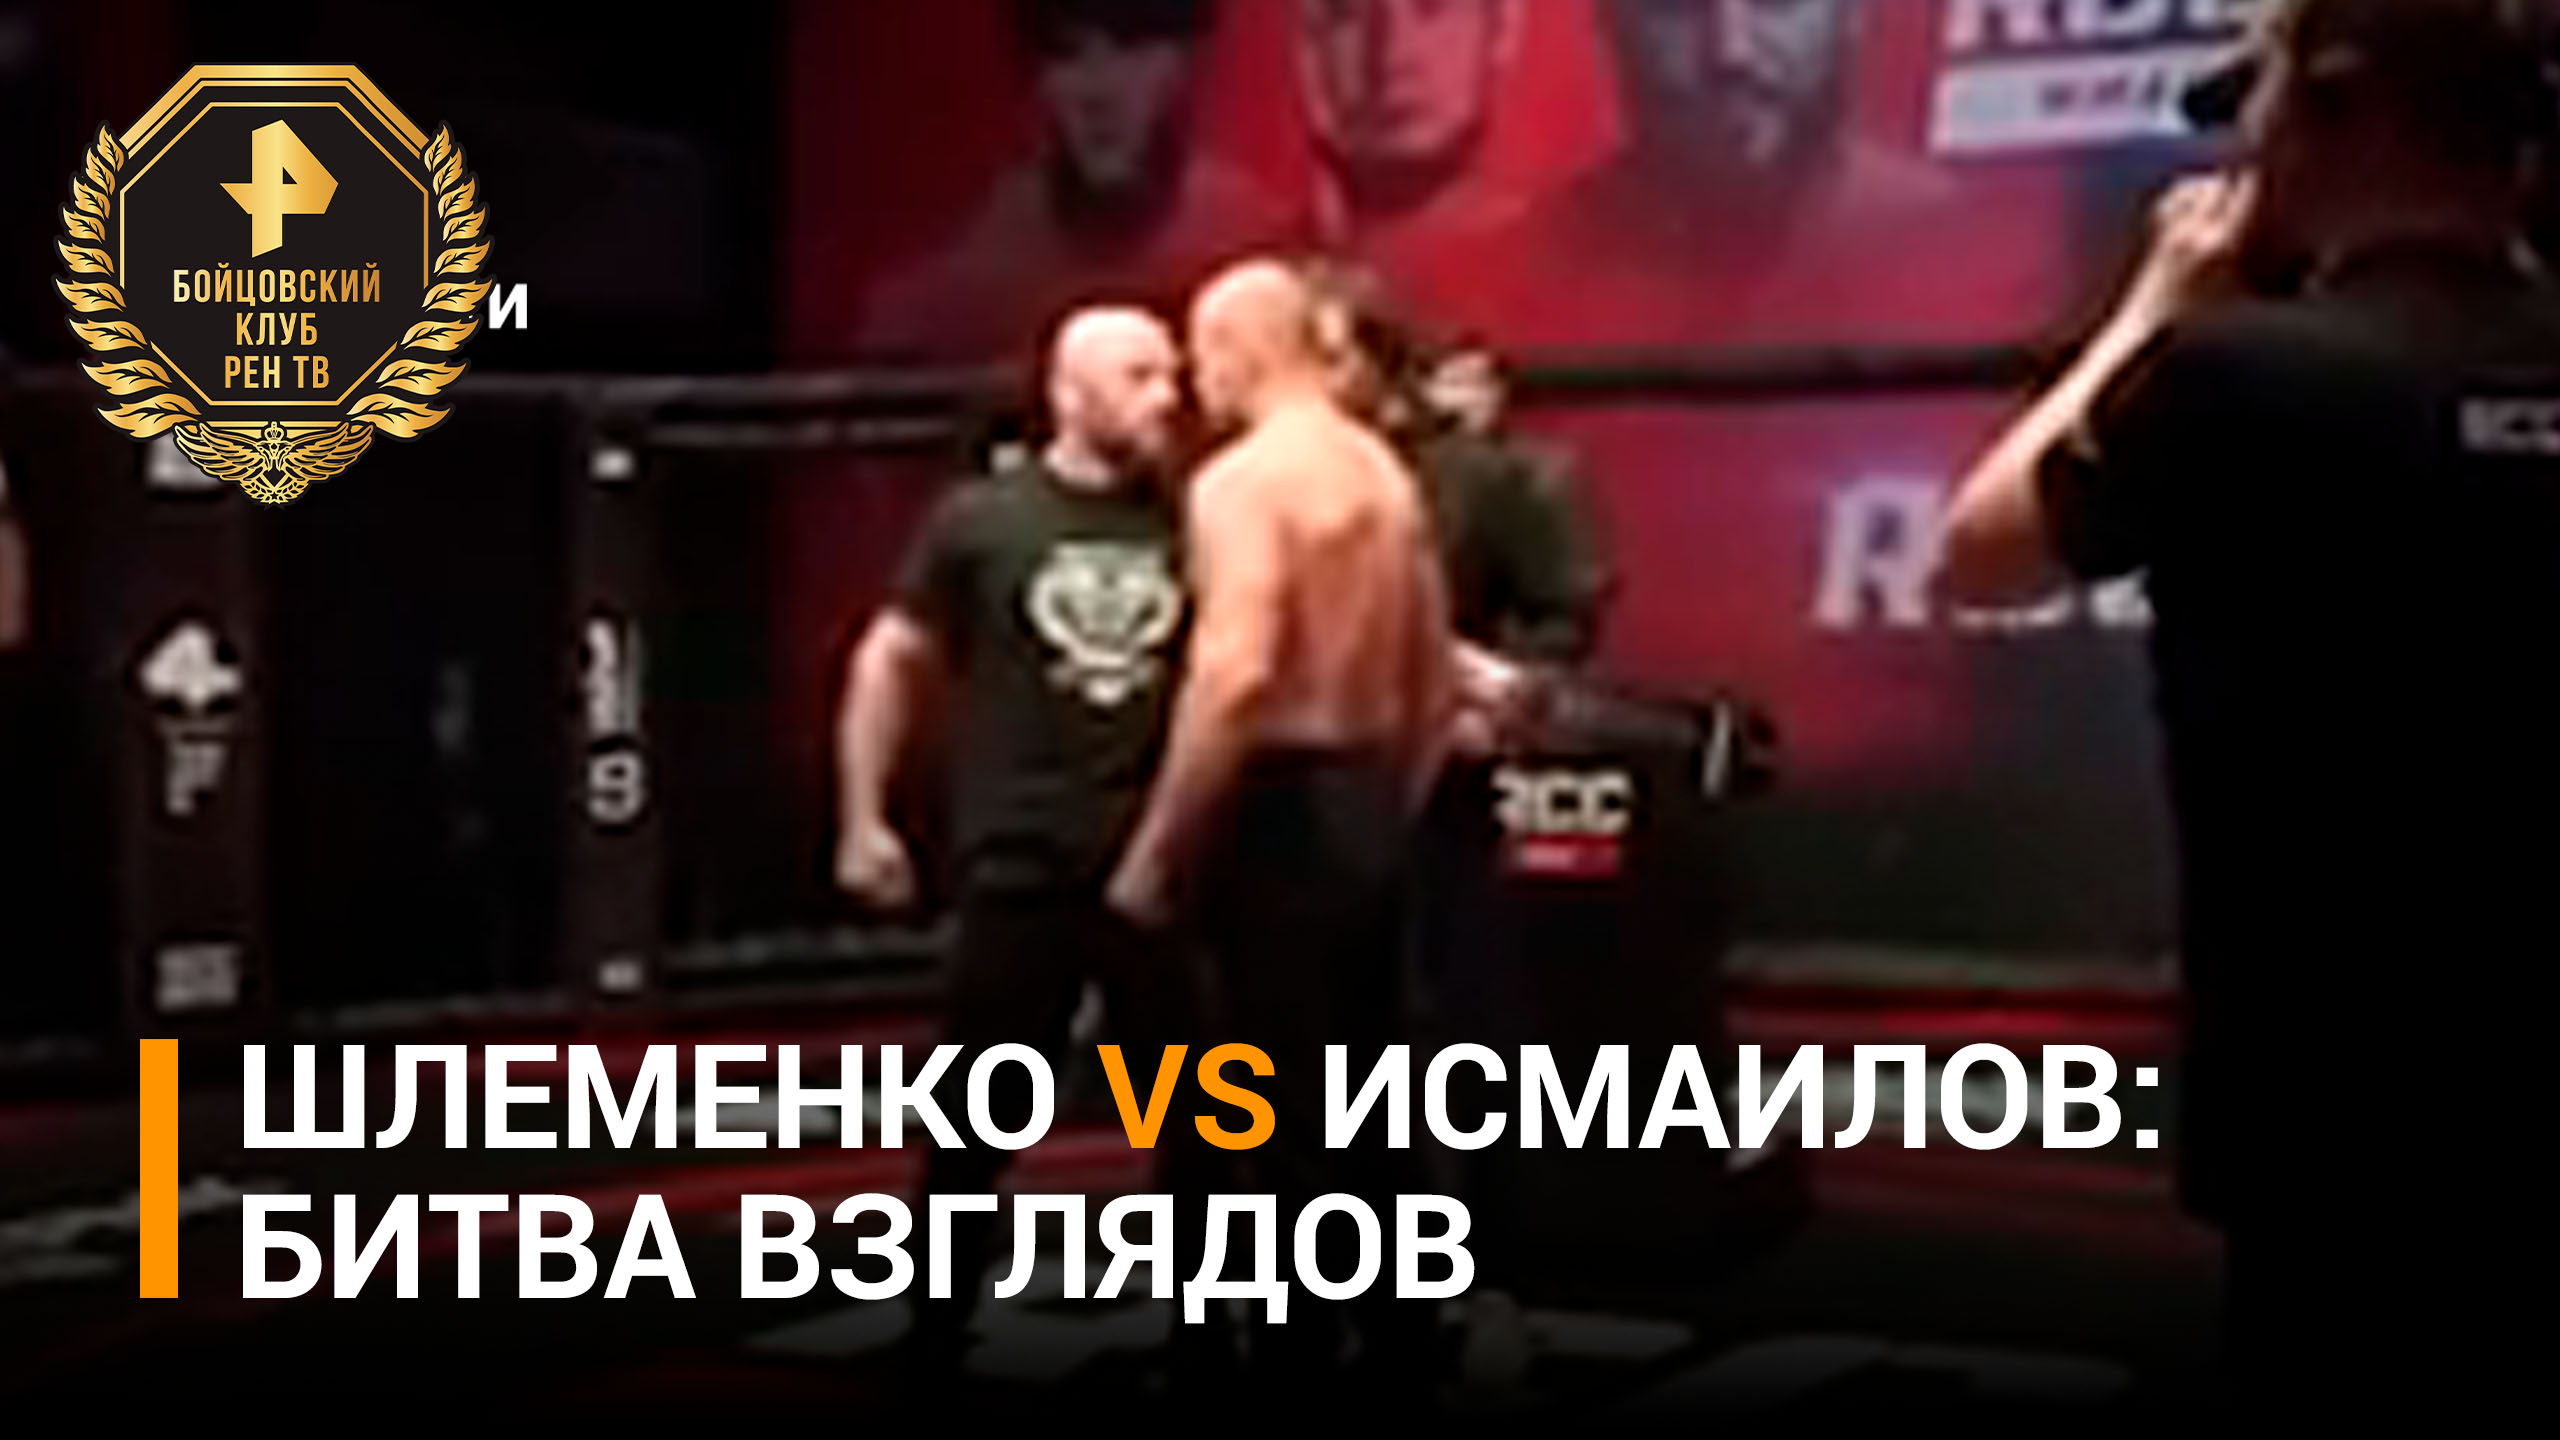 Исмаилов и Шлеменко провели финальную битву взглядов перед поединком / Бойцовский клуб РЕН